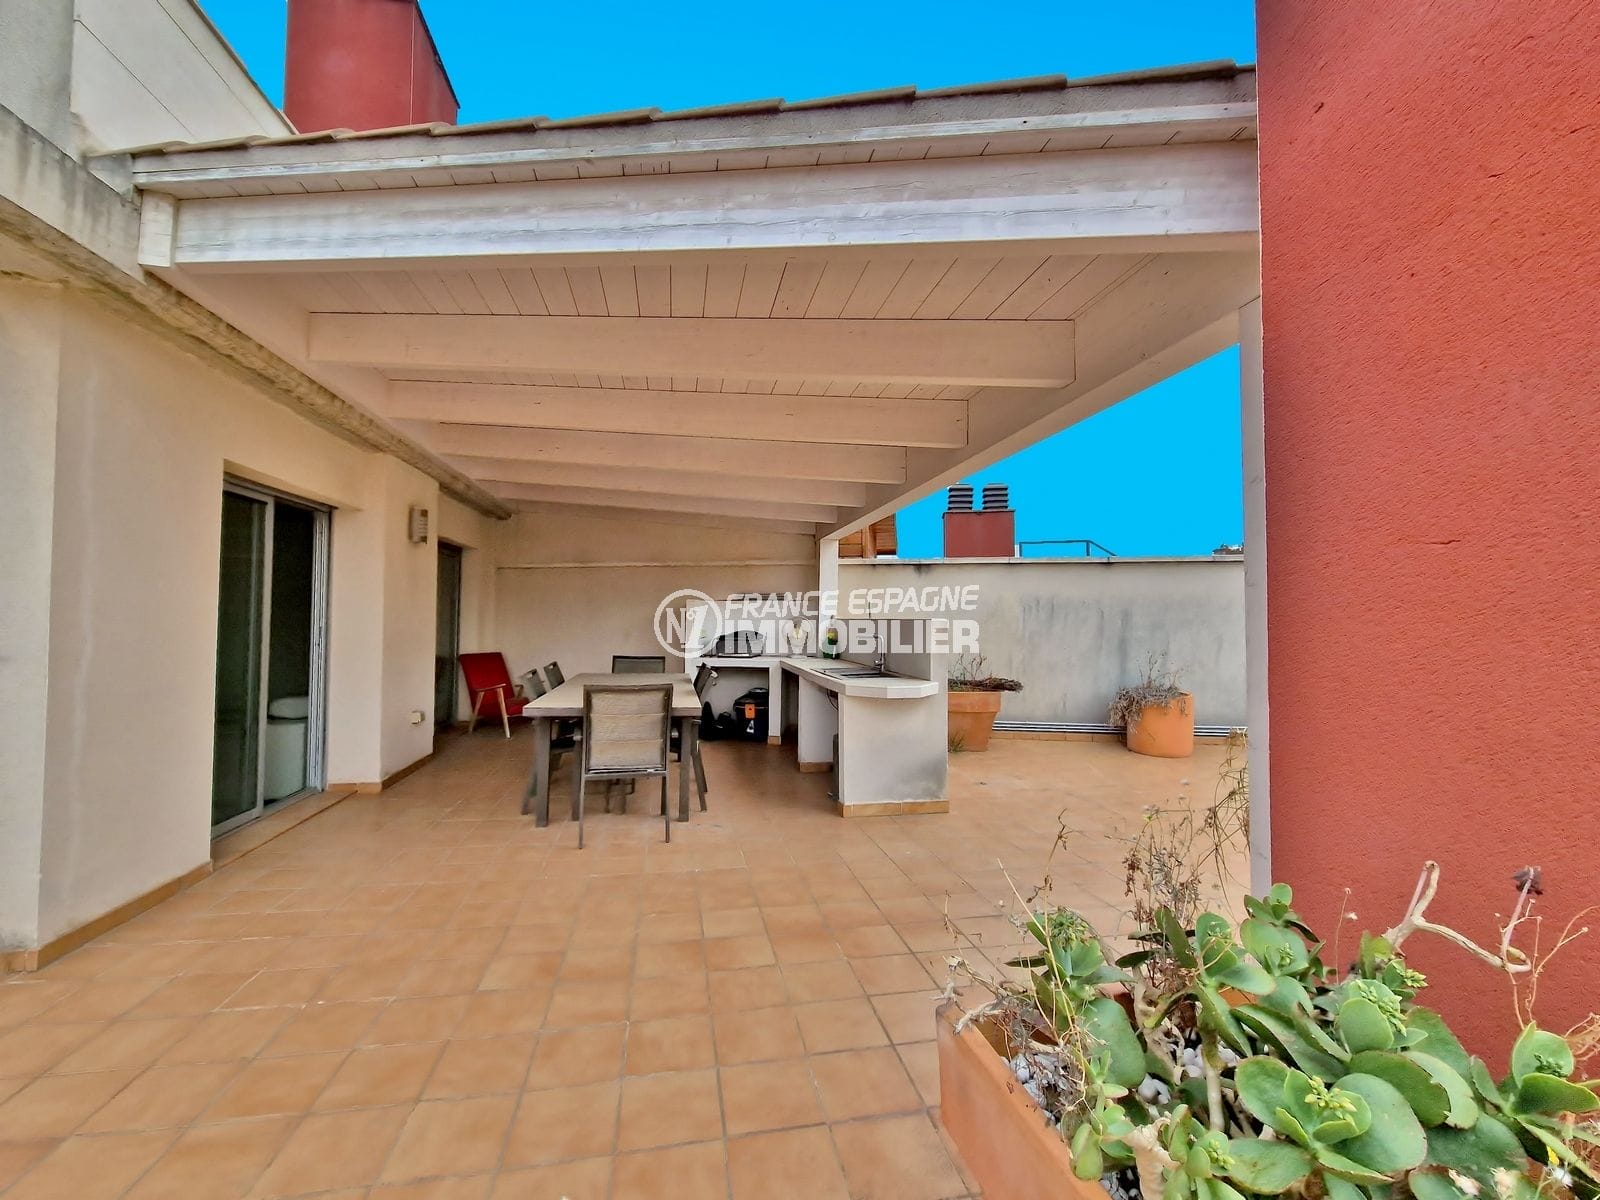 Figueres – atico terrasse solarium 175 m², parking privé sous-sol